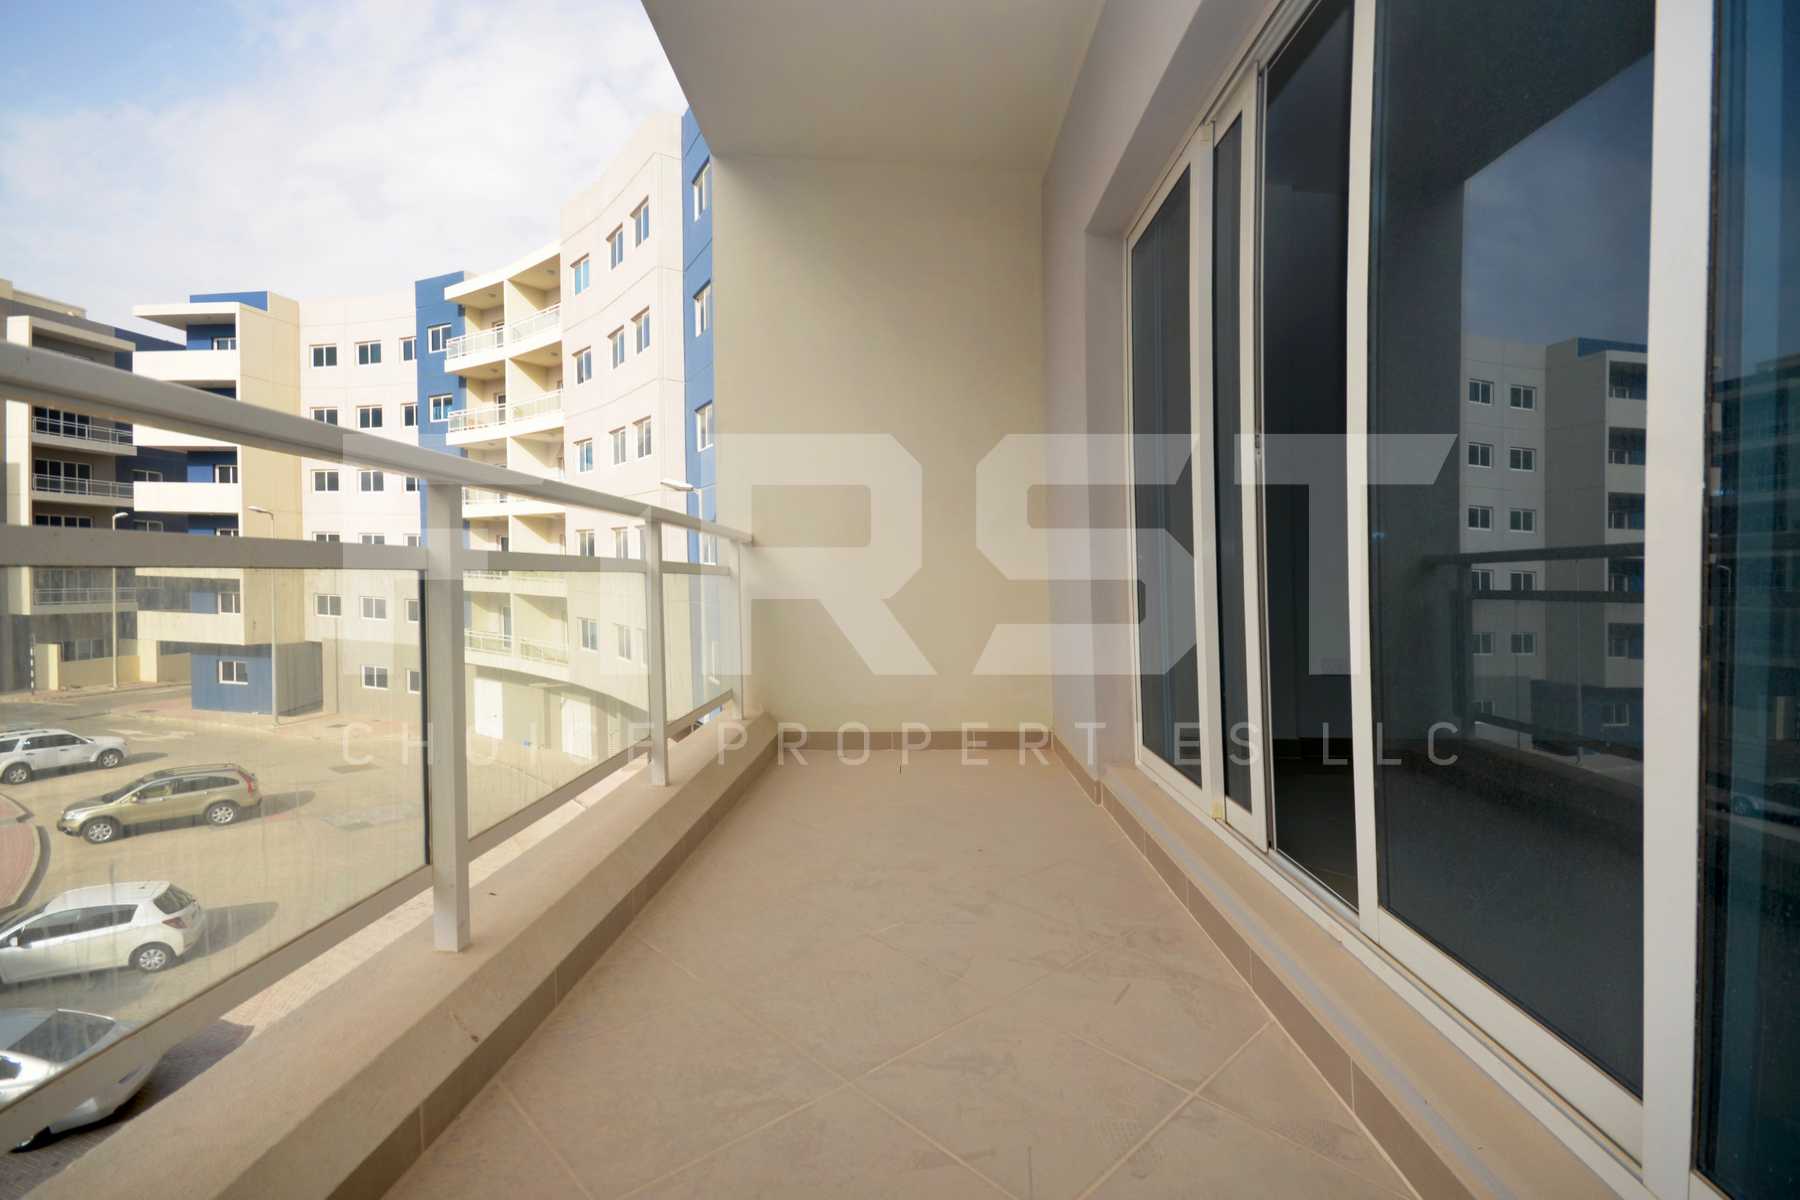 Internal Photo of 1 Bedroom Apartment Type C in Al Reef Downtown Al Reef AUH UAE (11).jpg